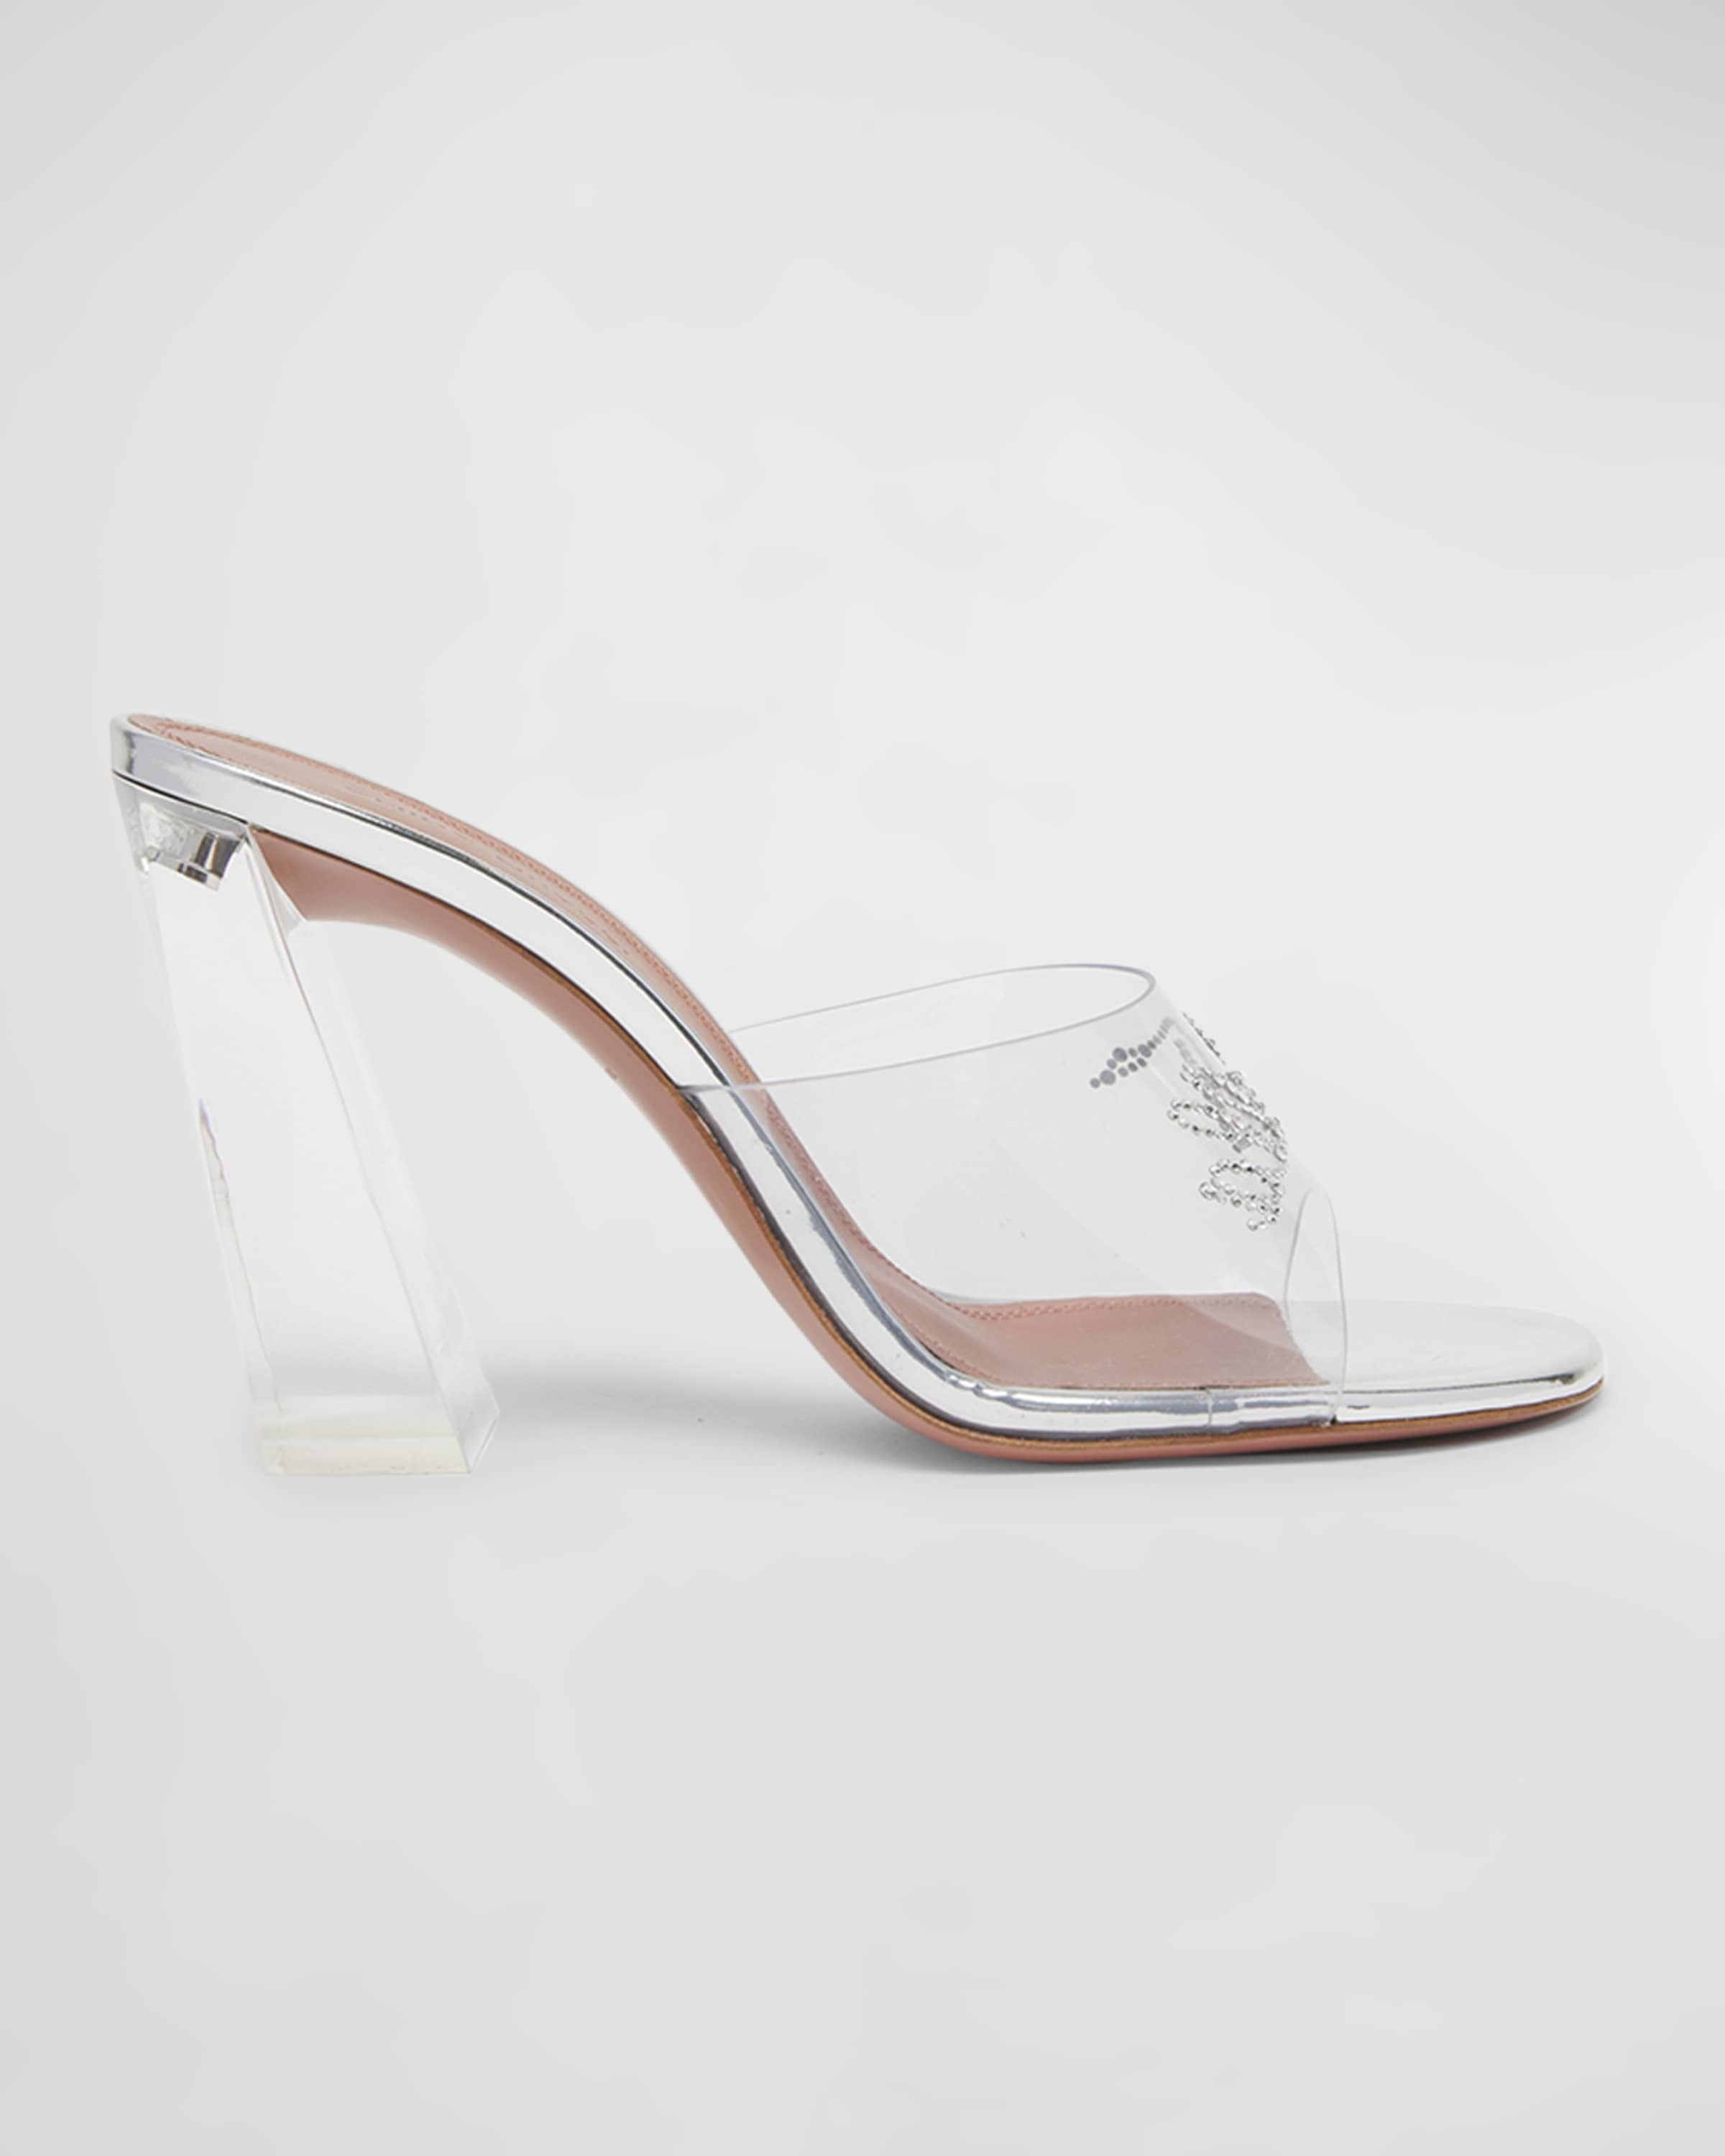 Bella Glass Slipper Mule Sandals - 1